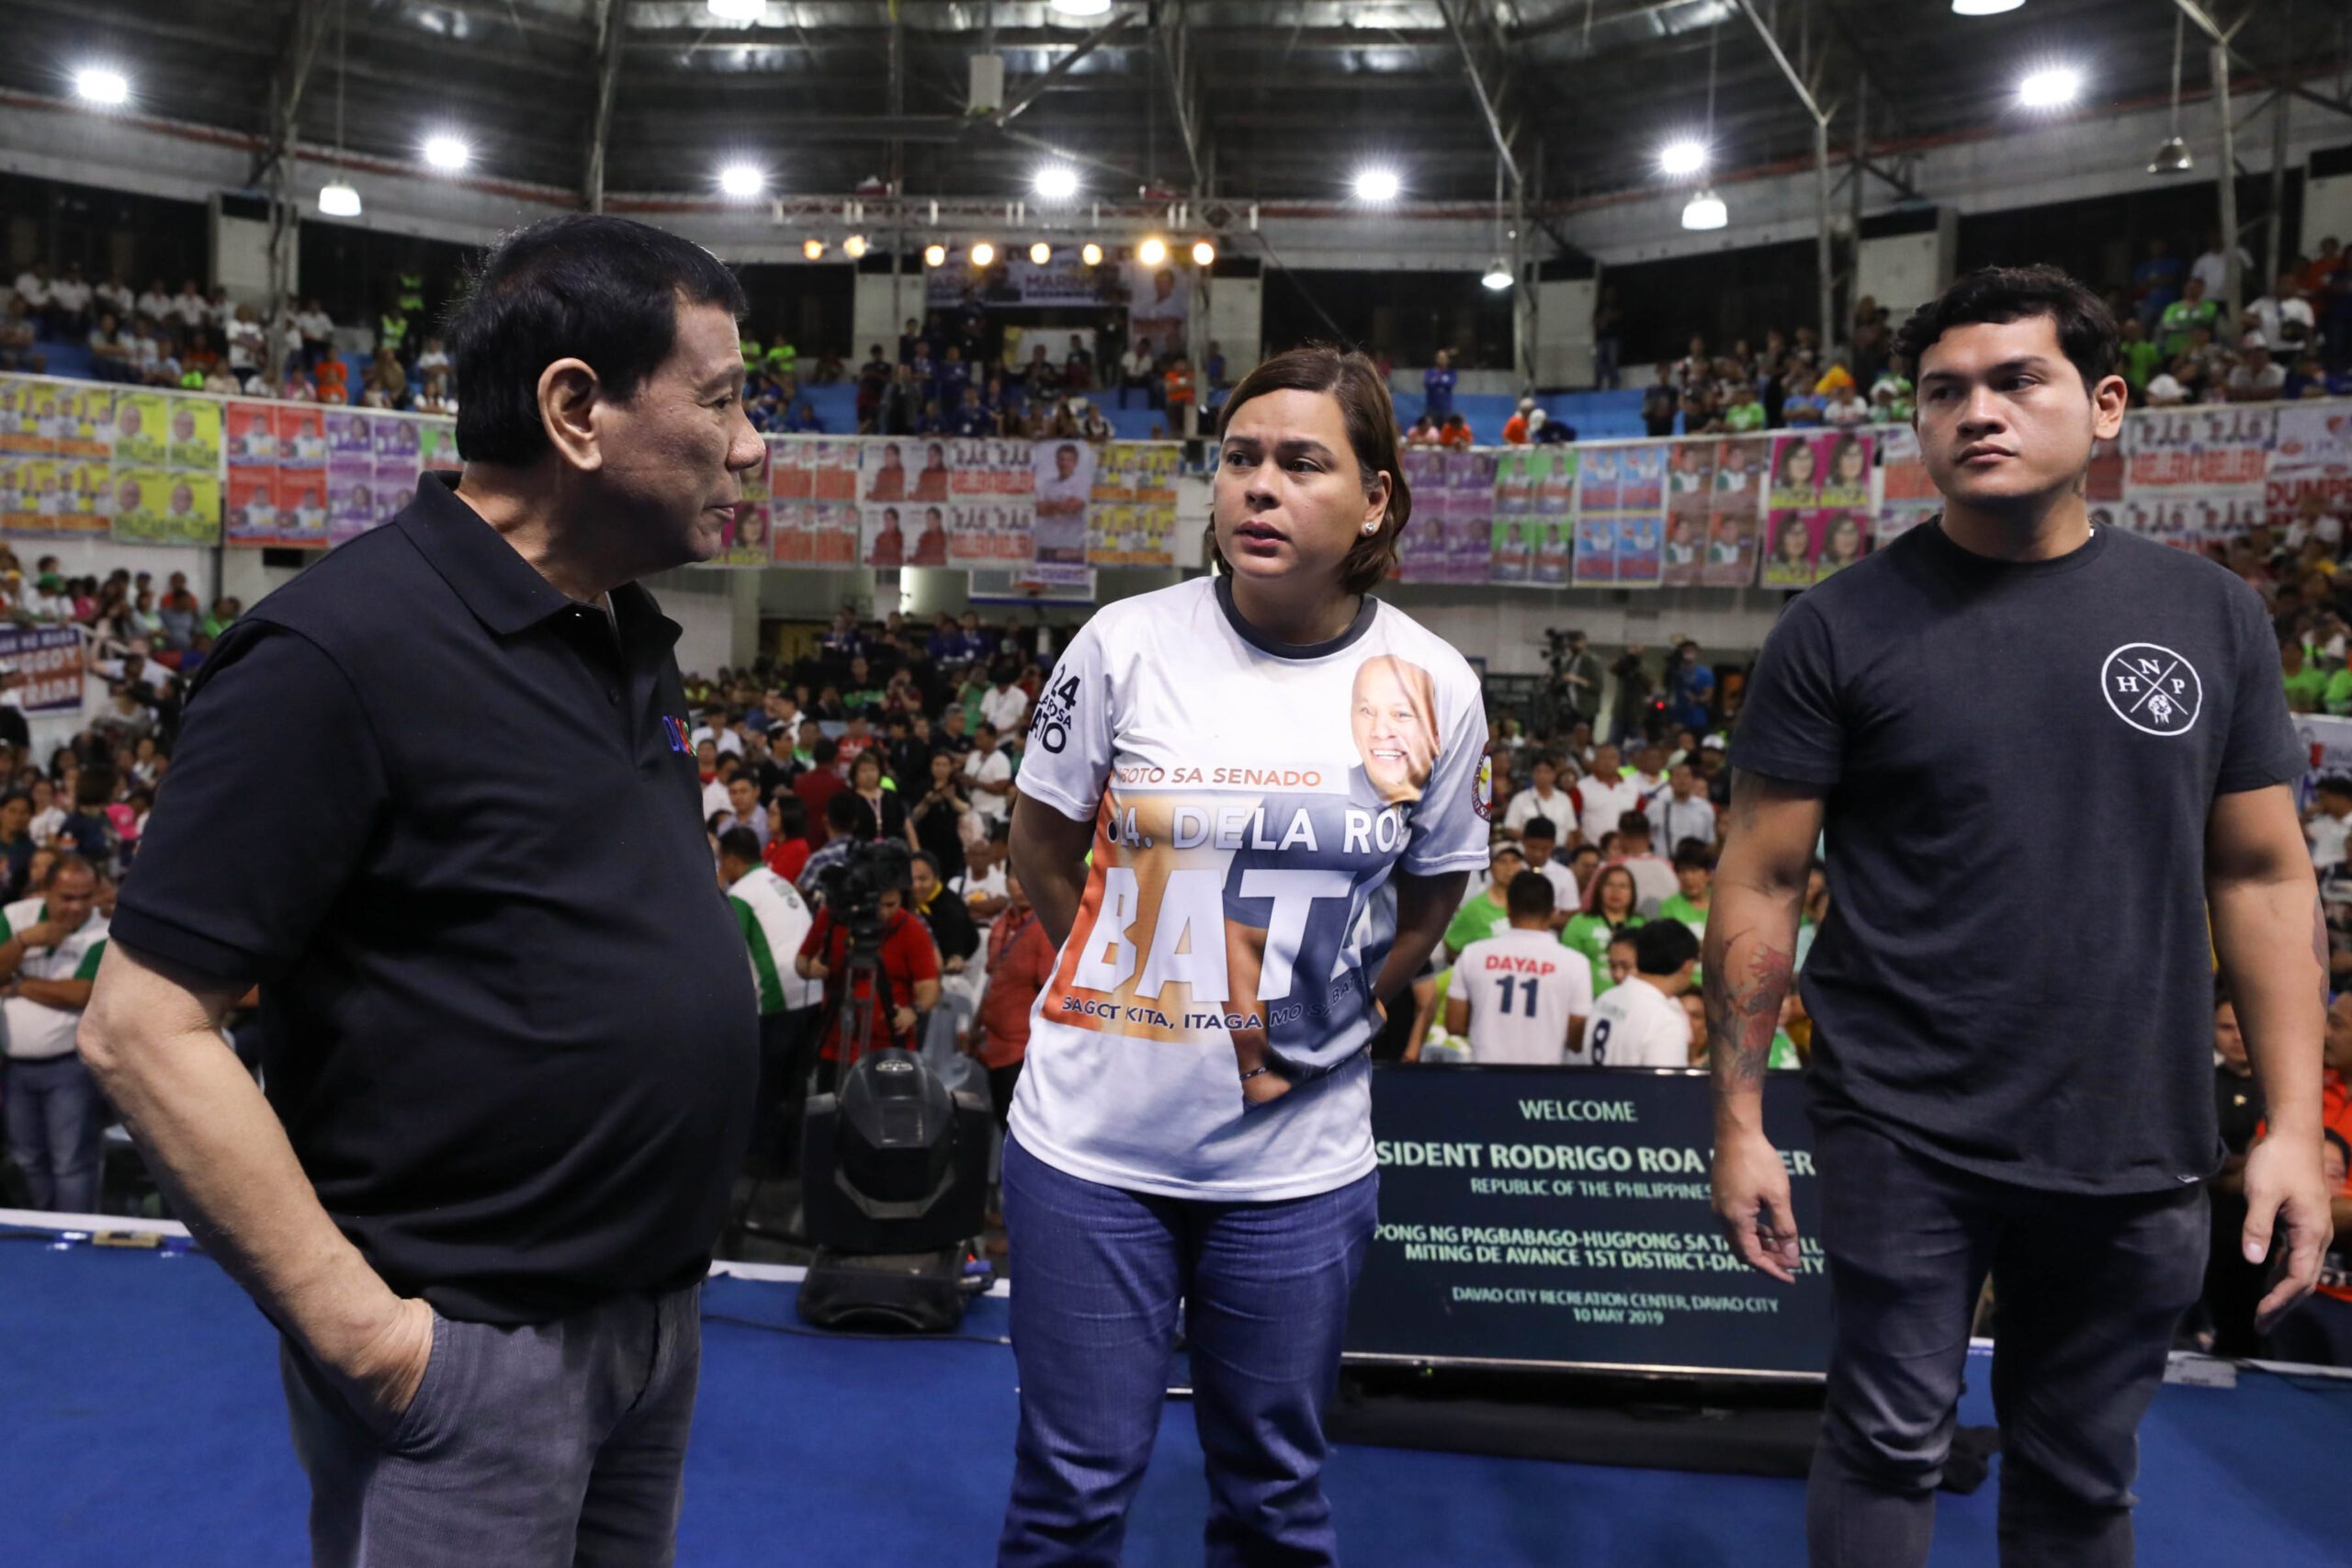 Sara Duterte spurns Alvarez peace offer, says Cayetano made ‘veiled threat’